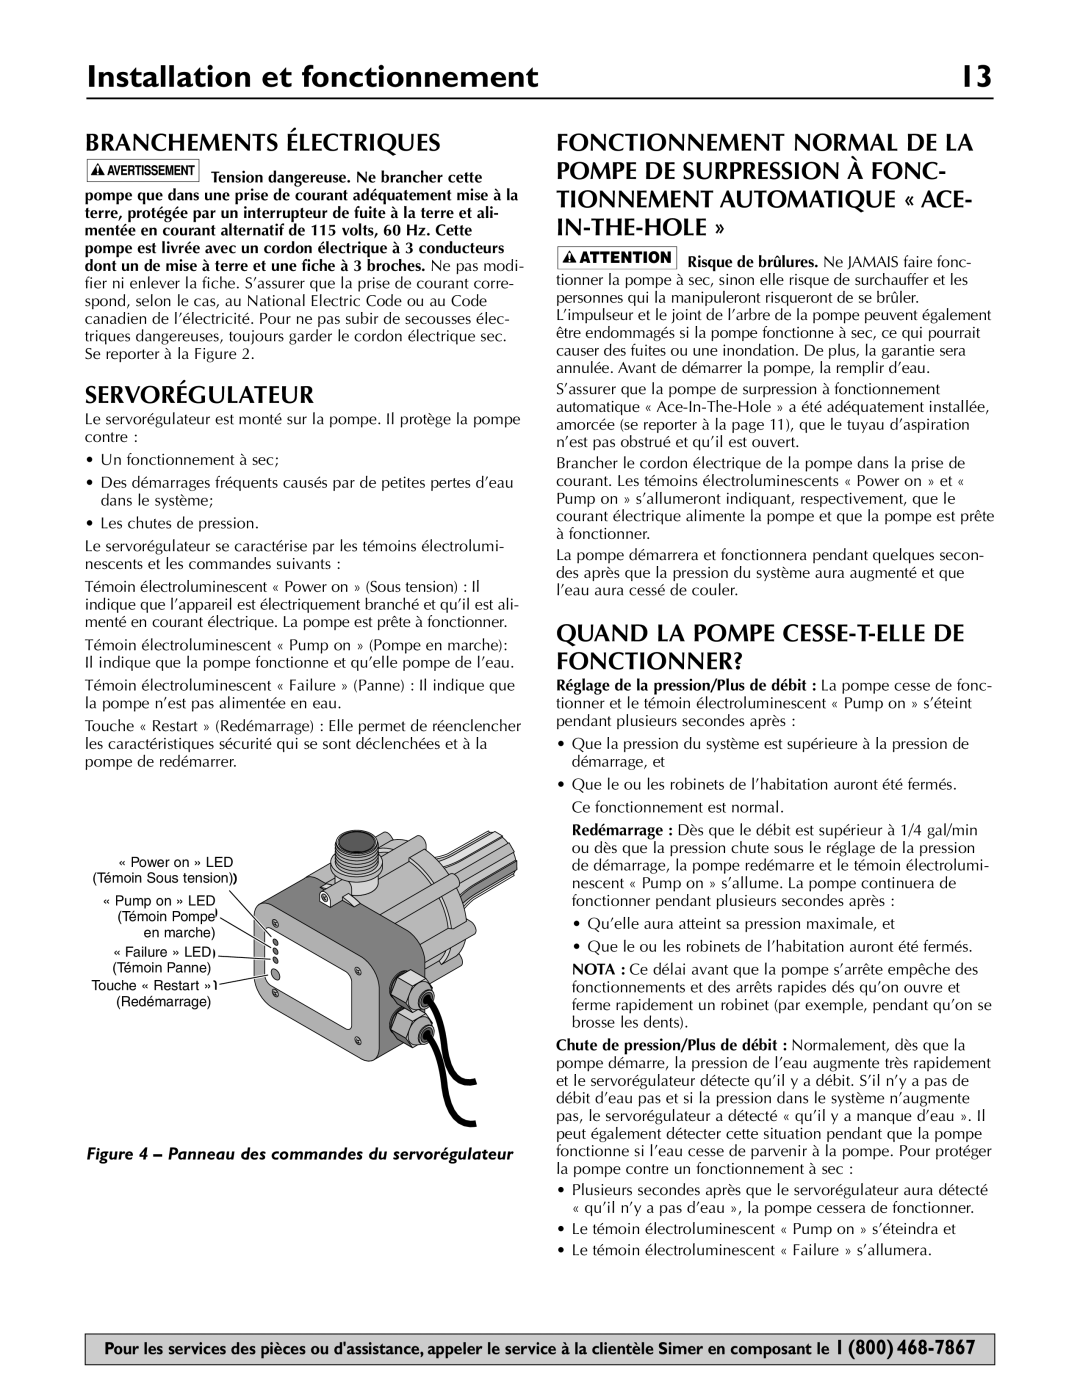 Simer Pumps 3075SS-01 Installation et fonctionnement, Branchements Électriques, Servorégulateur, «‘FailFailurere’» LED 